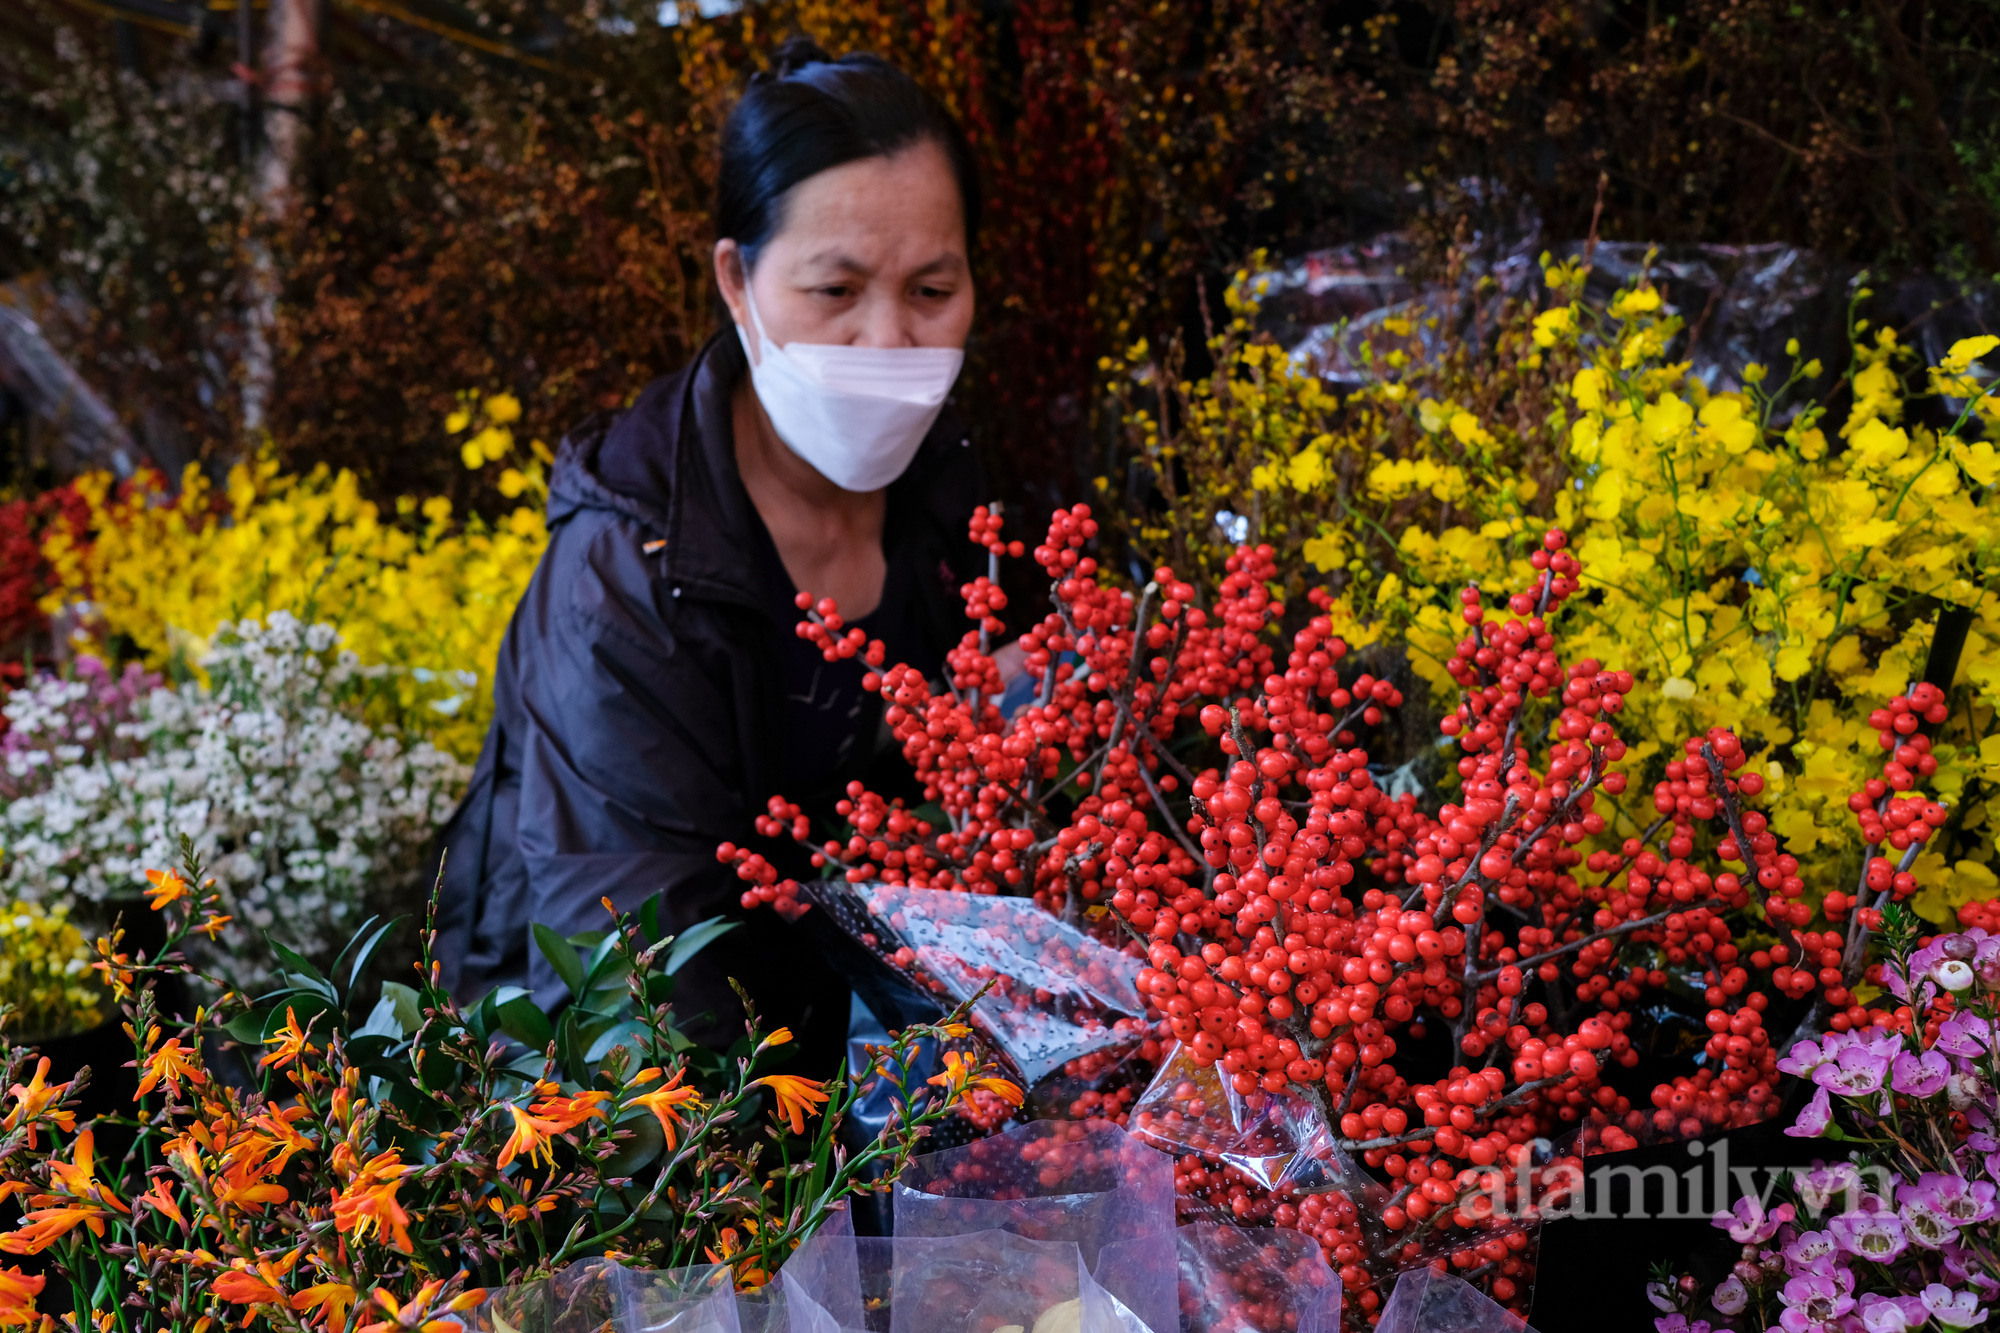 29 Tết đi chợ hoa Quảng Bá: Giá hoa tăng 20% so với ngày thường, mua nhanh 5 cành đào đông cắm đẹp nhà mà hết 2,2 triệu - Ảnh 12.